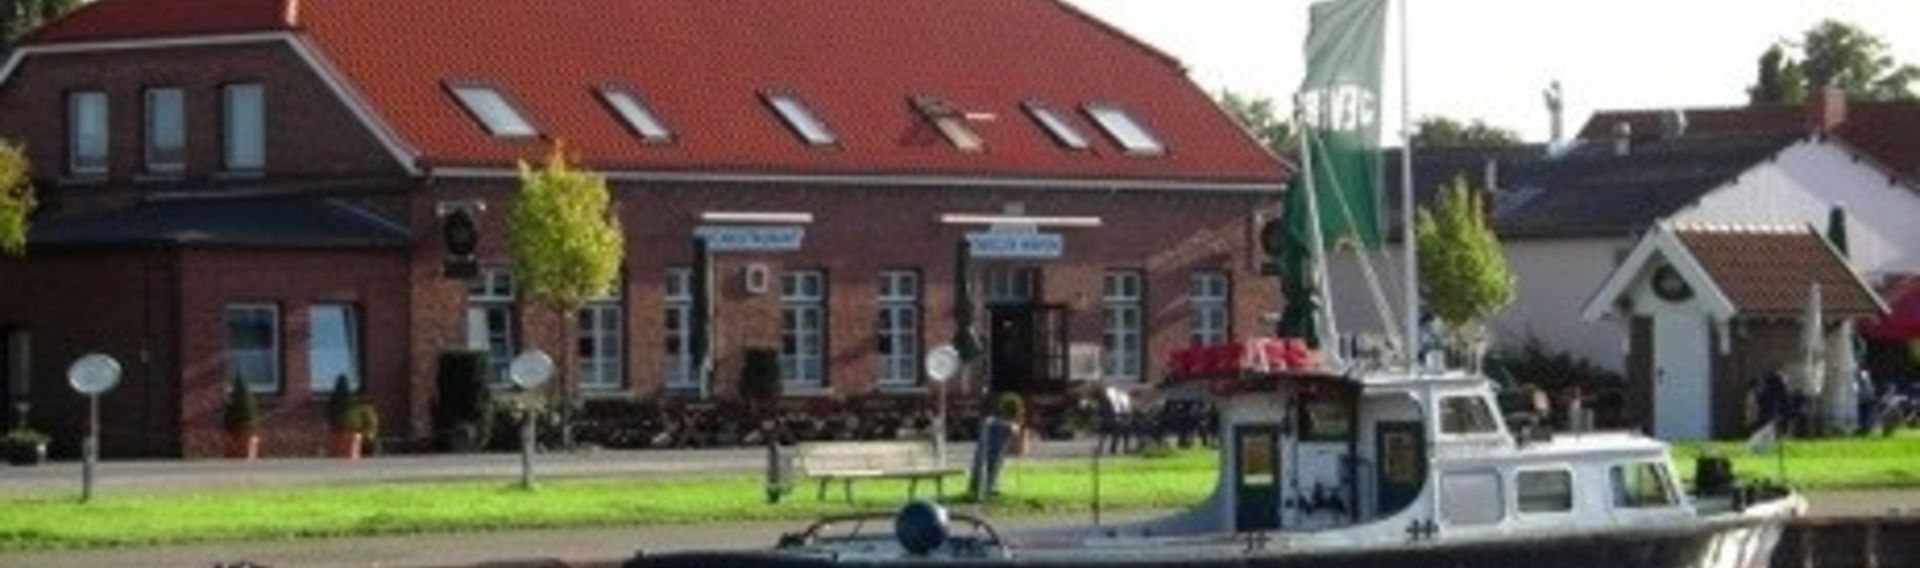 Fischrestaurant mit Hund in Friesland „Vareler Hafen“